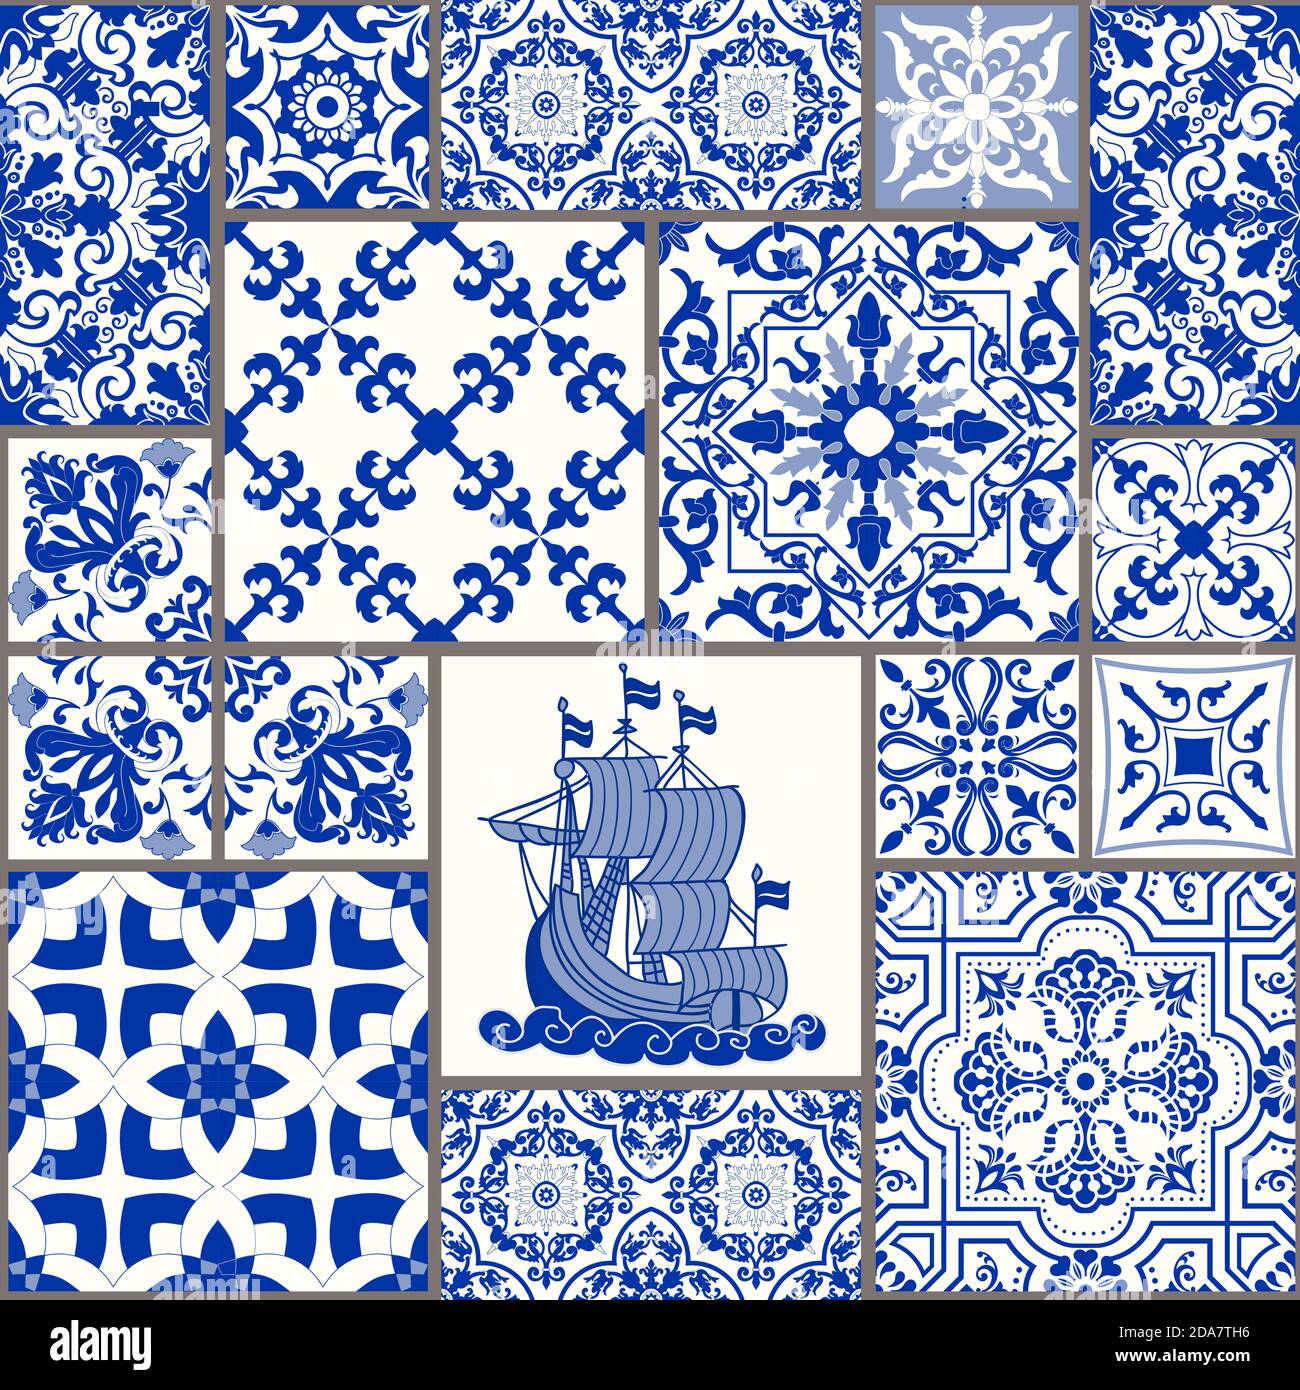 Majolika-Keramikfliesen, blaues und weißes Azulejo, original traditionelle portugiesische und spanische Einrichtung. Nahtlose Patchwork-Fliesen mit Meer-Motive. Vektor. Stock Vektor